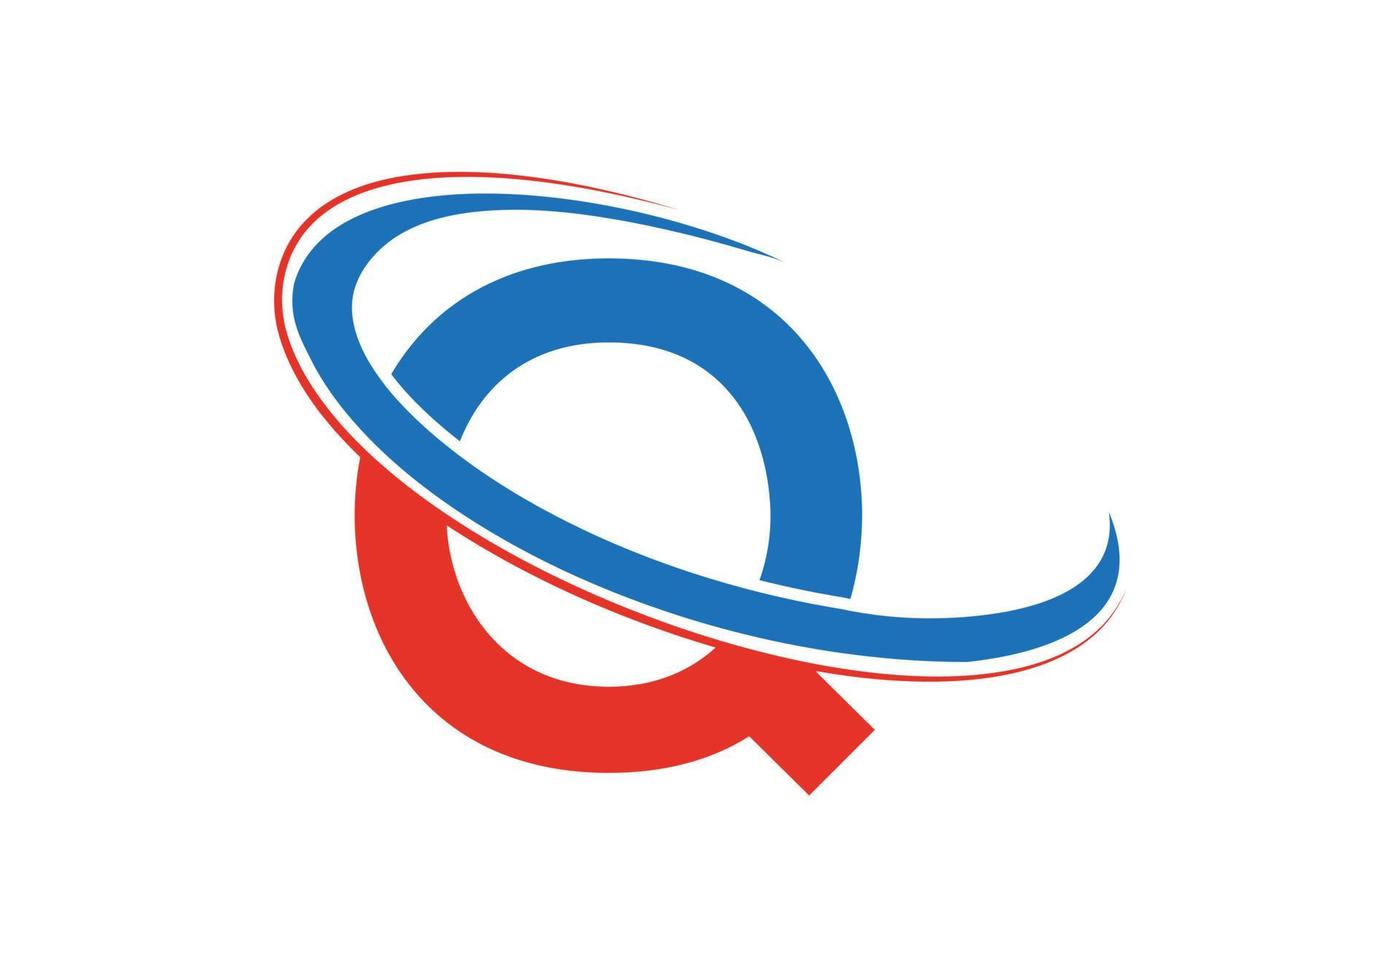 anfangsbuchstabe q logo für immobilien-, geschäfts- und unternehmensidentität vektor